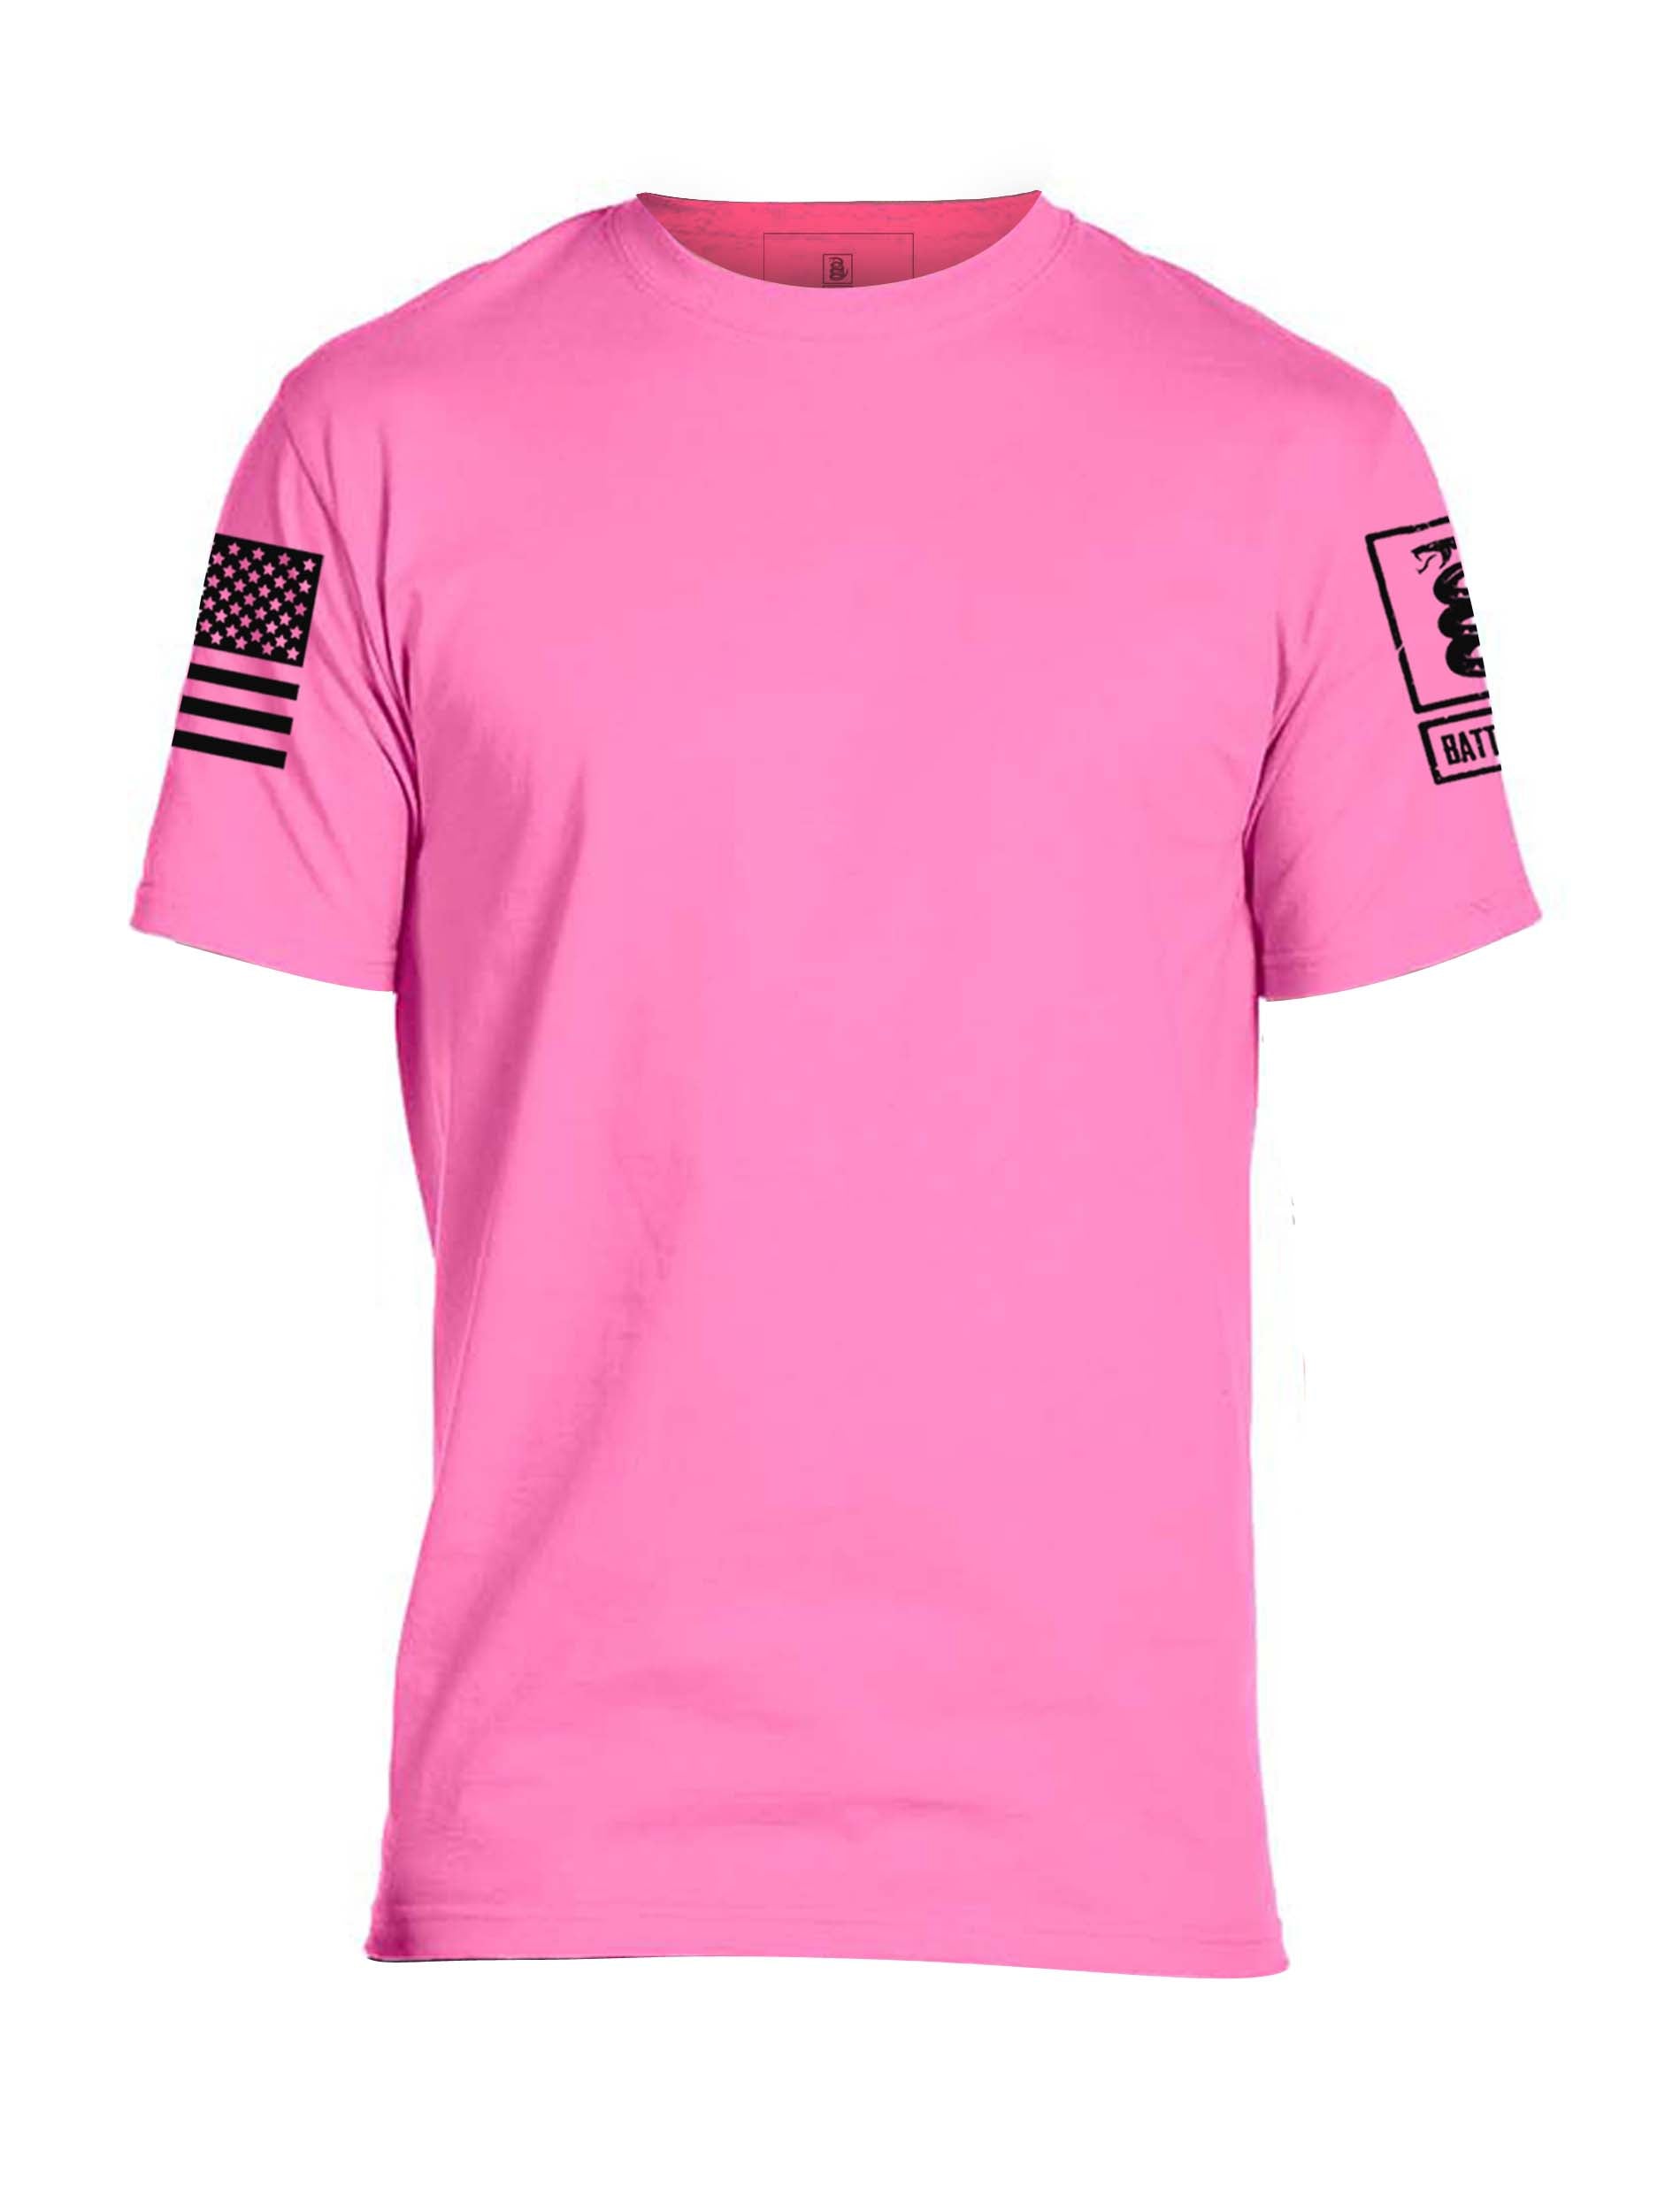 Battleraddle Basic Line Sleeve Print Mens Blended T Shirt